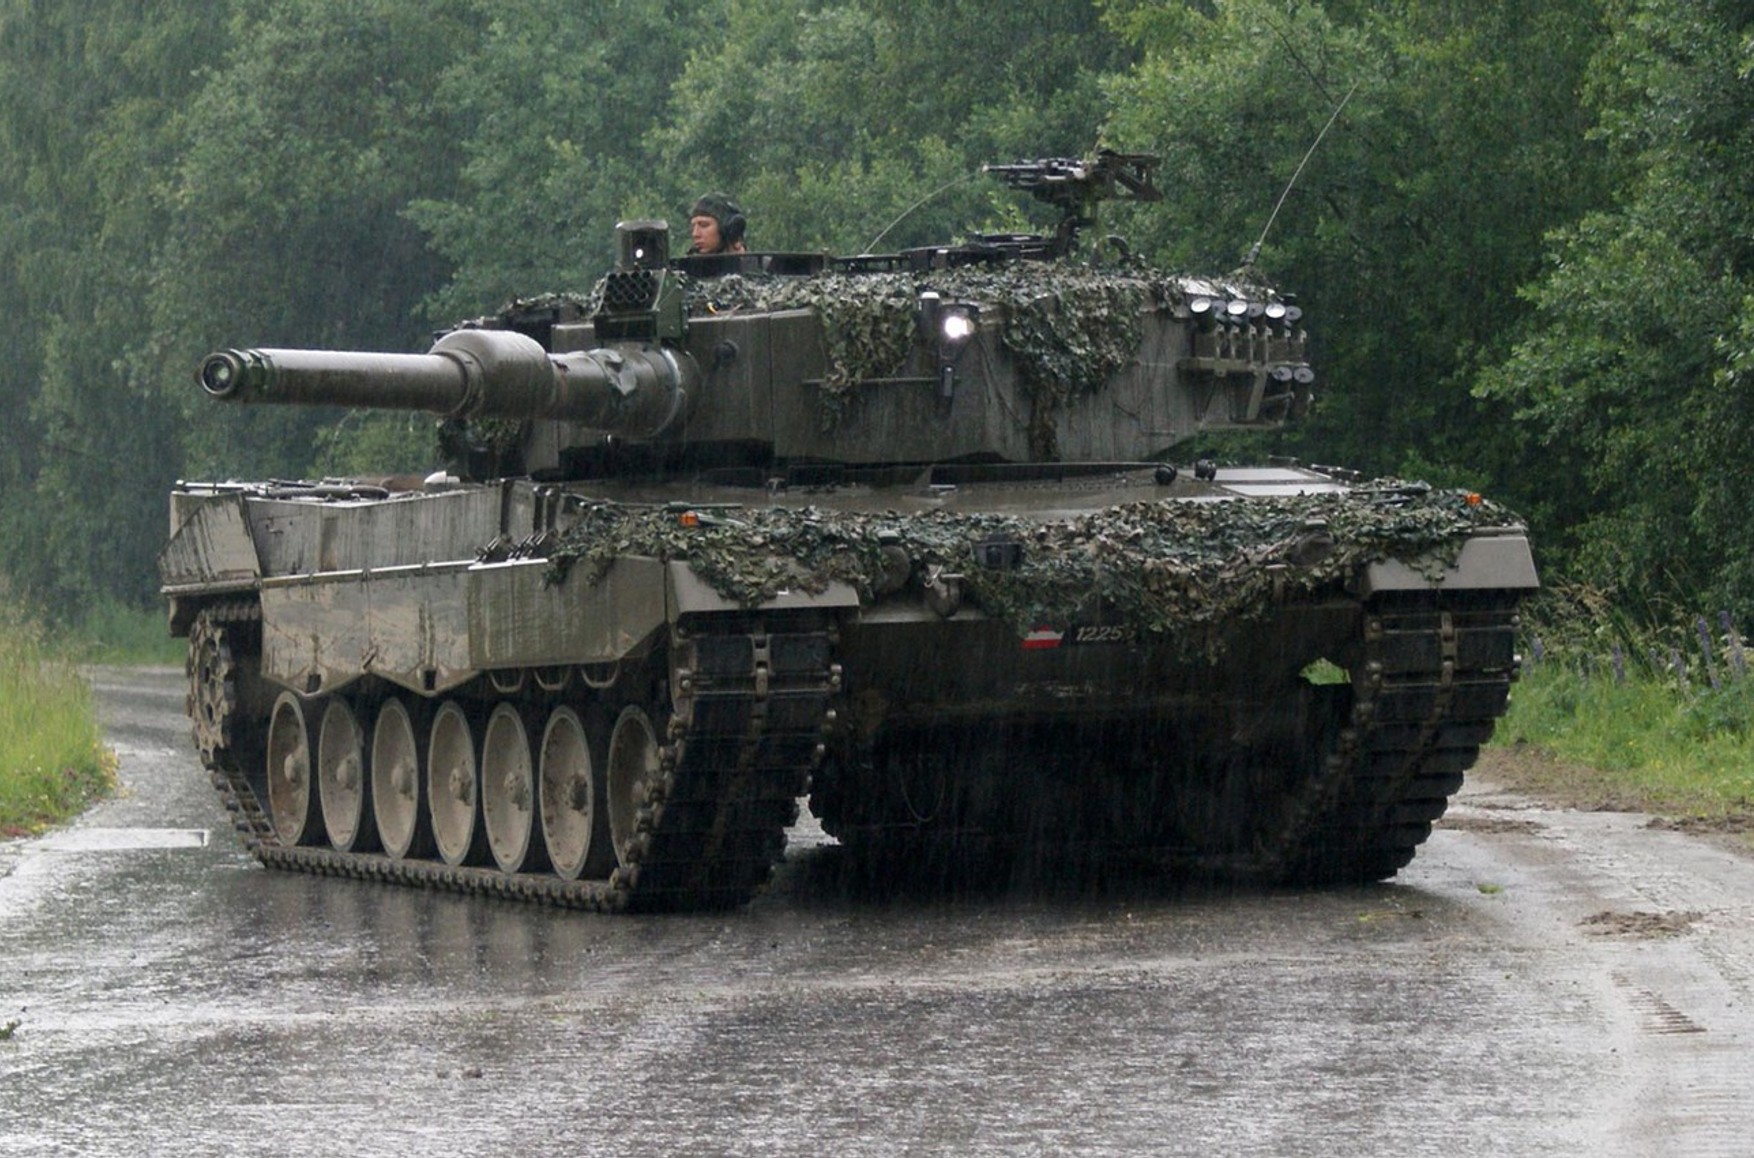 Испания готова поставить в Украину ЗРК и танки Leopard – El Pais